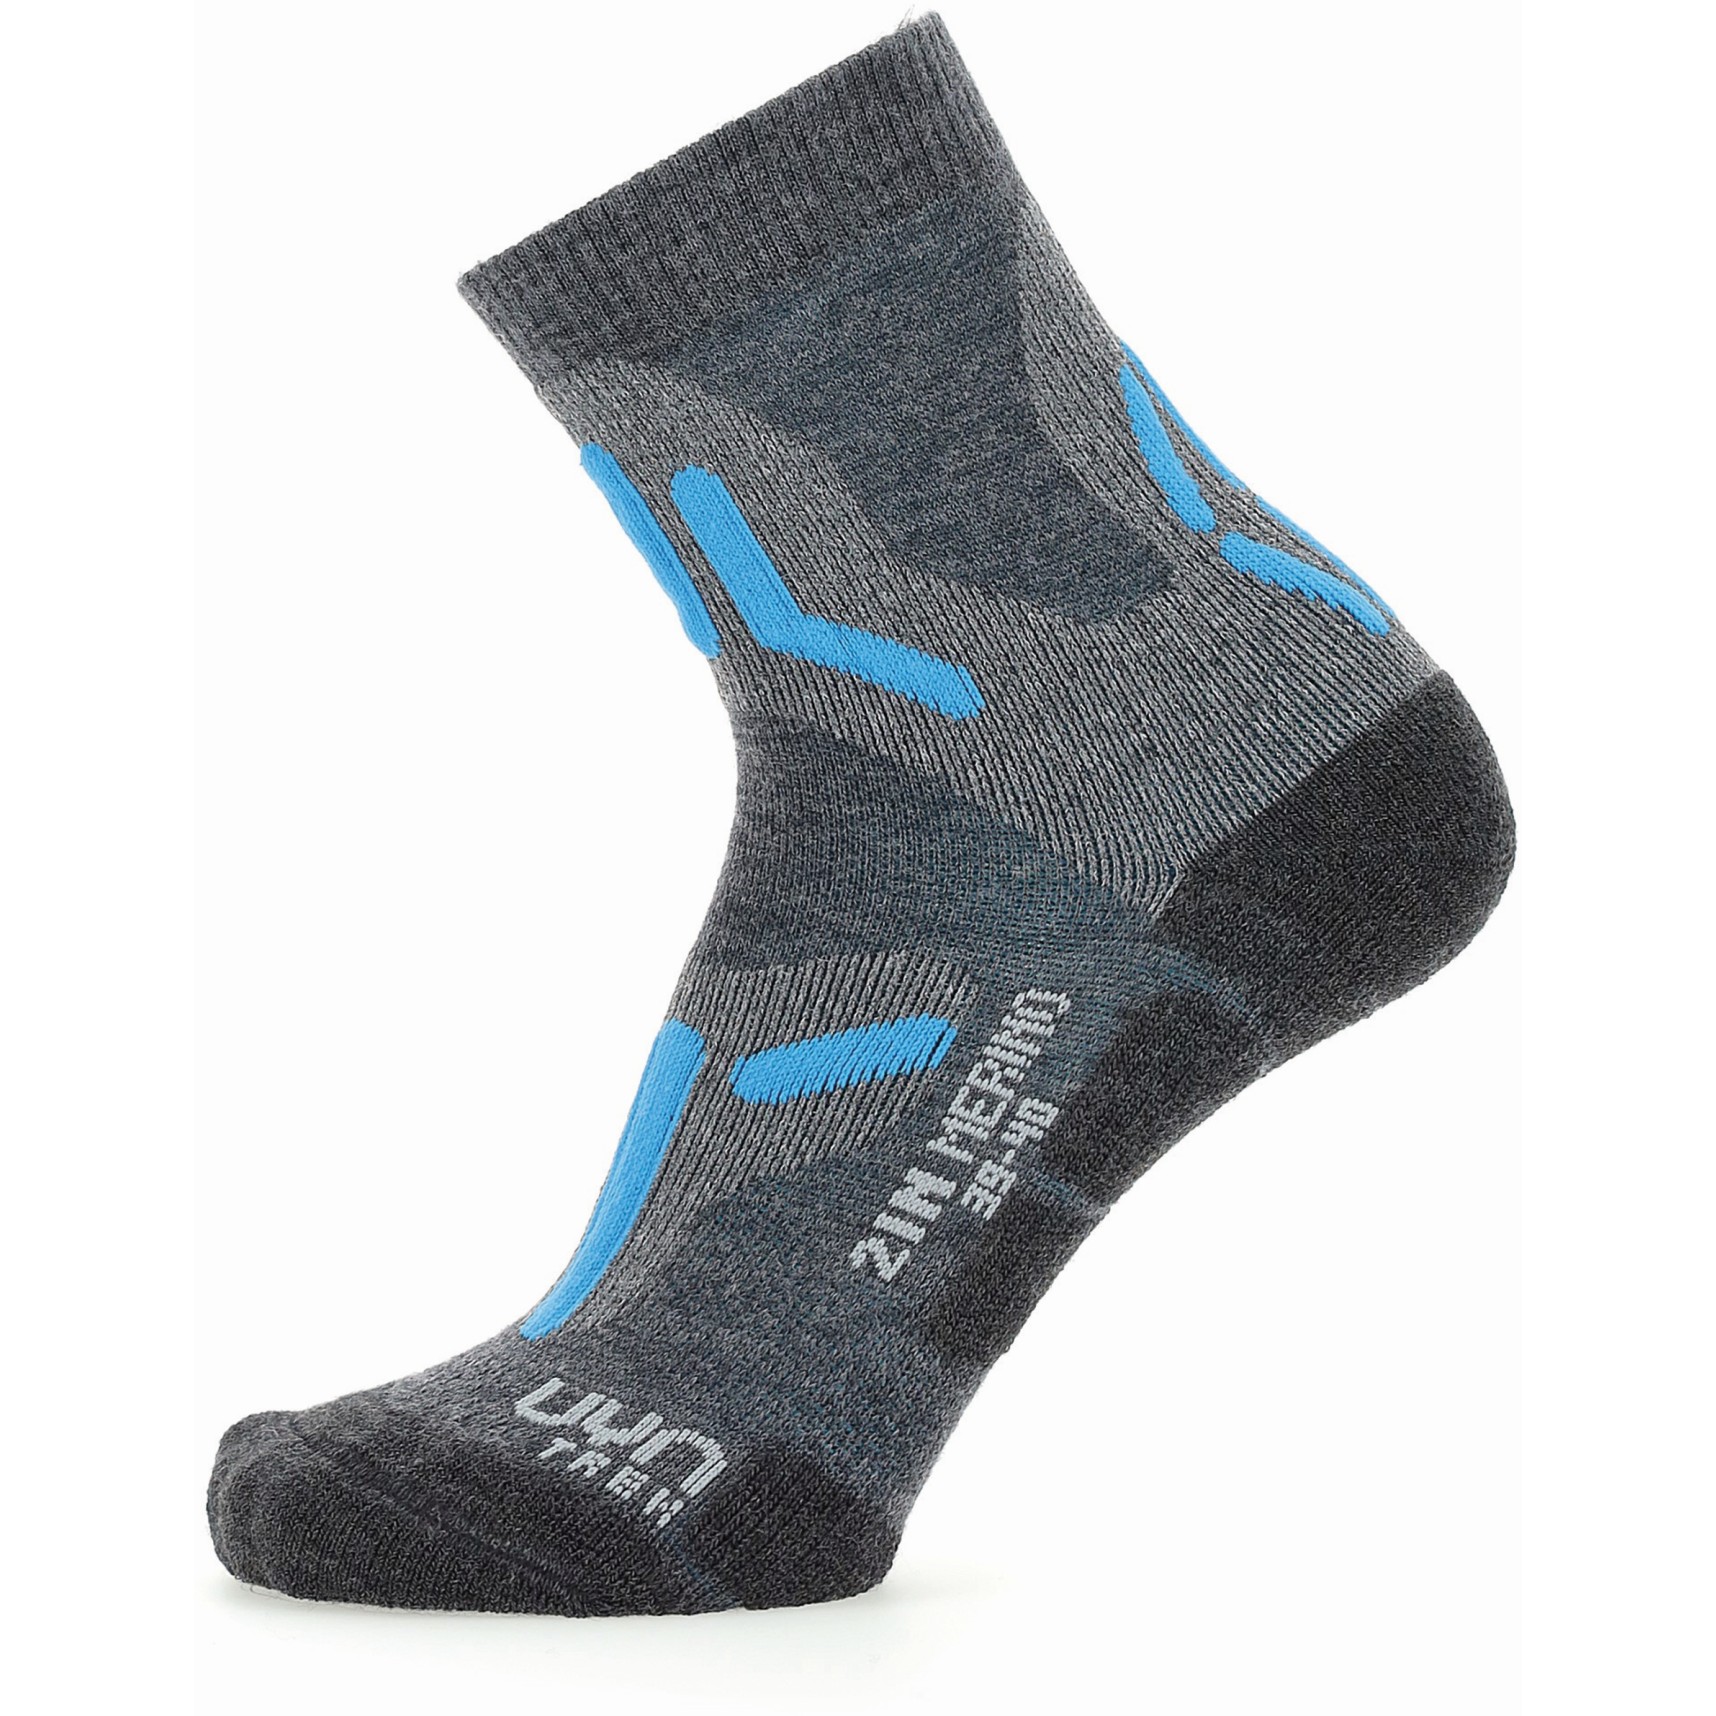 Produktbild von UYN Trekking 2In Merino Socken Damen - Mid Grey/Turquoise